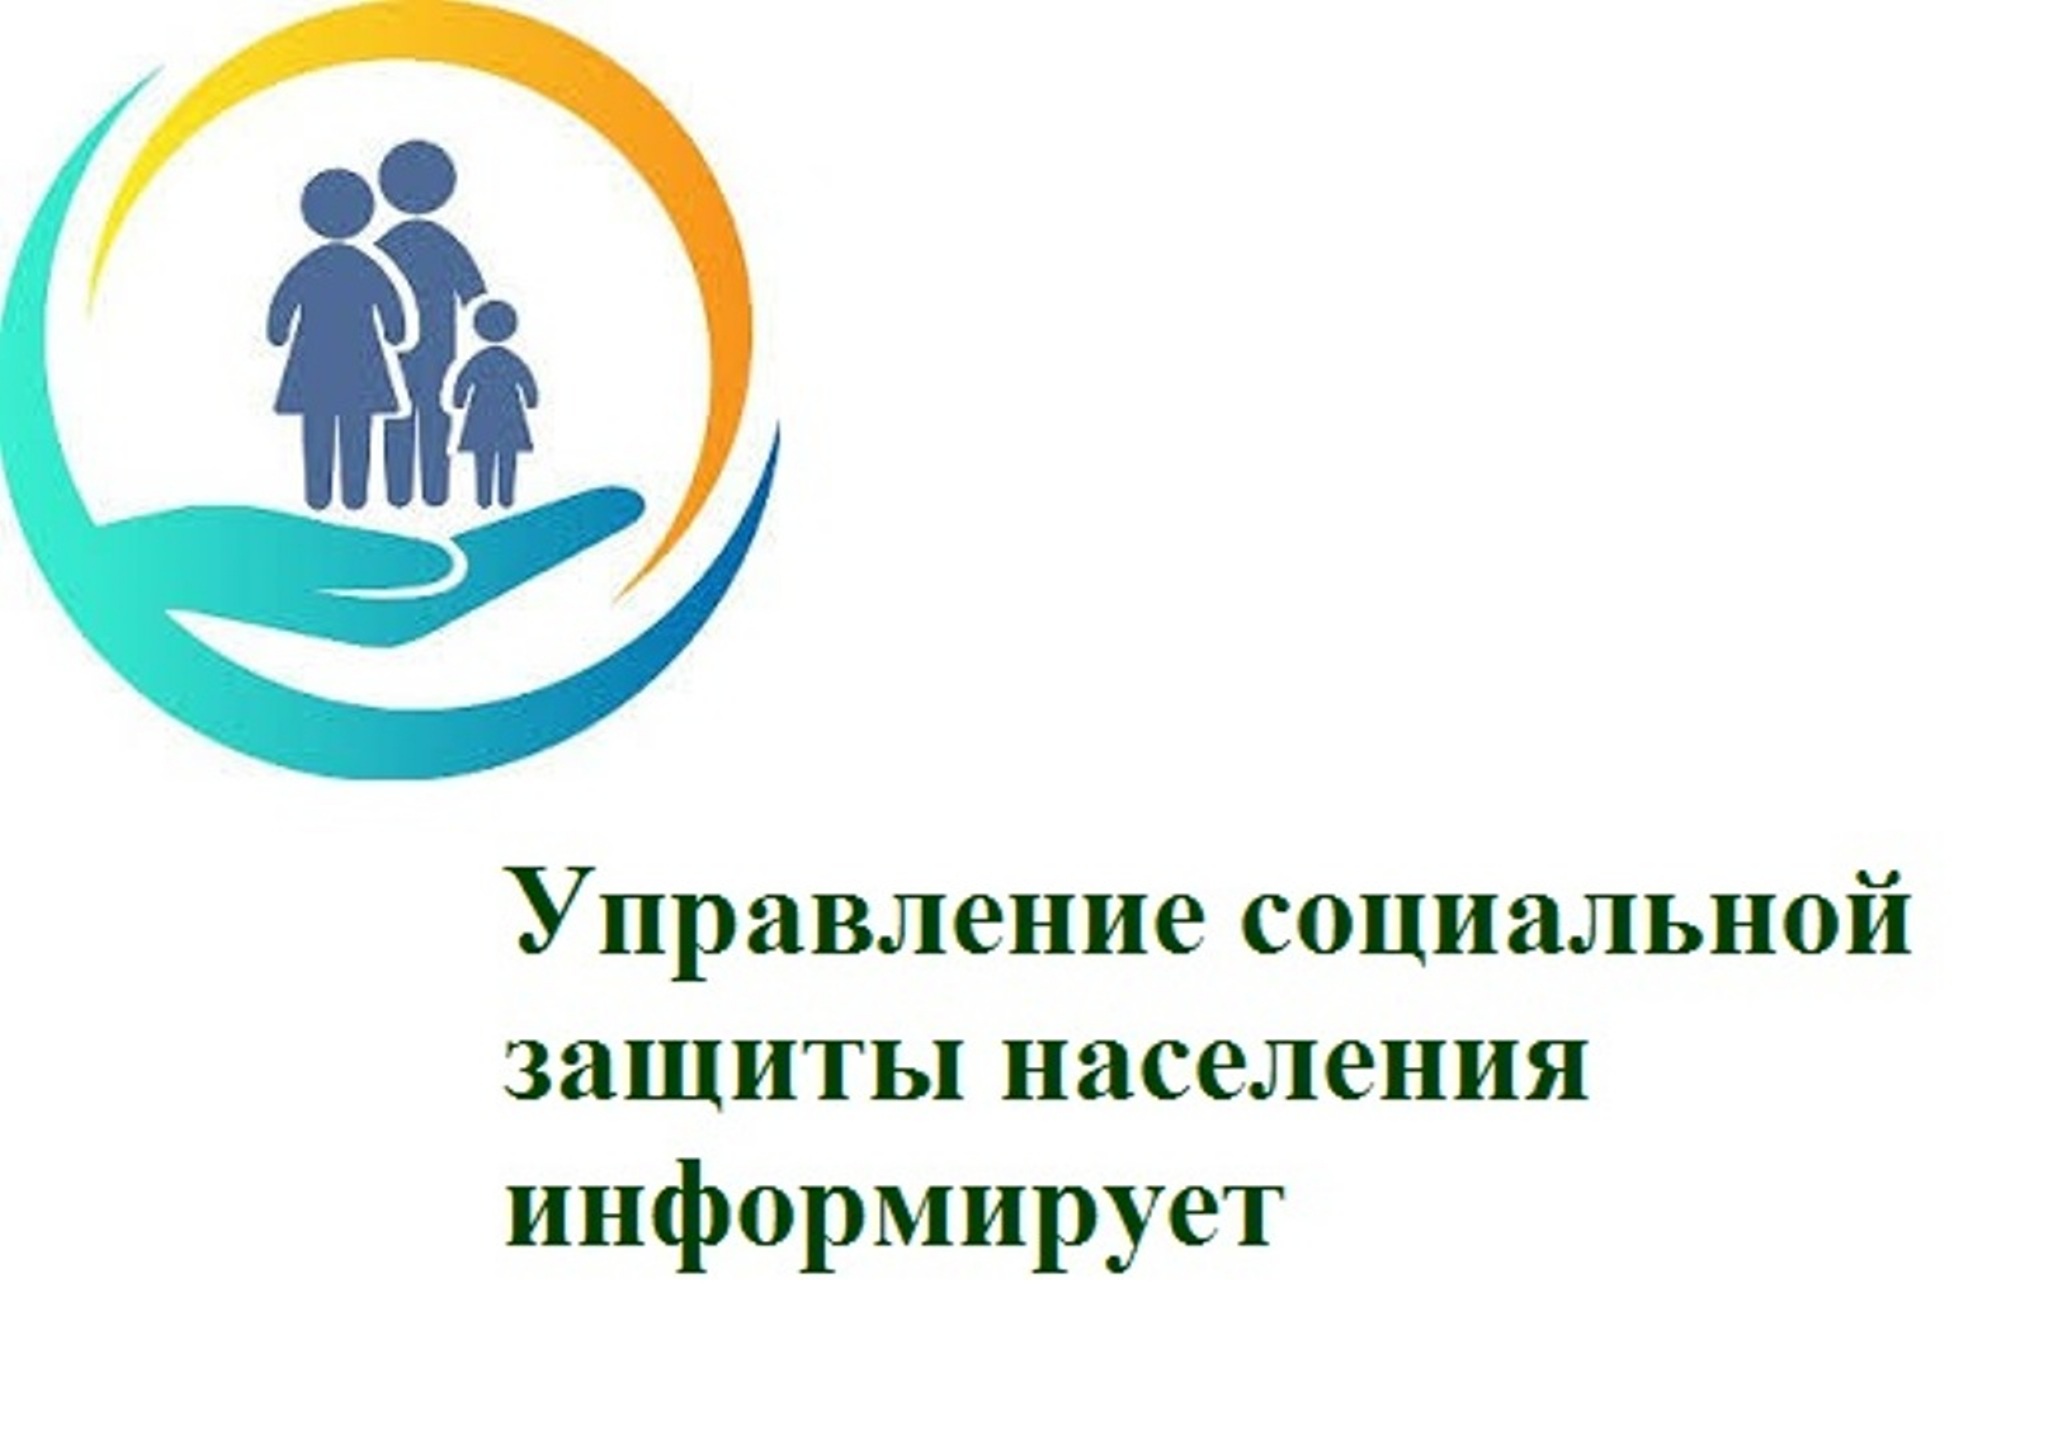 ОГКУ «Управление социальной защиты населения по Качугскому району» информирует